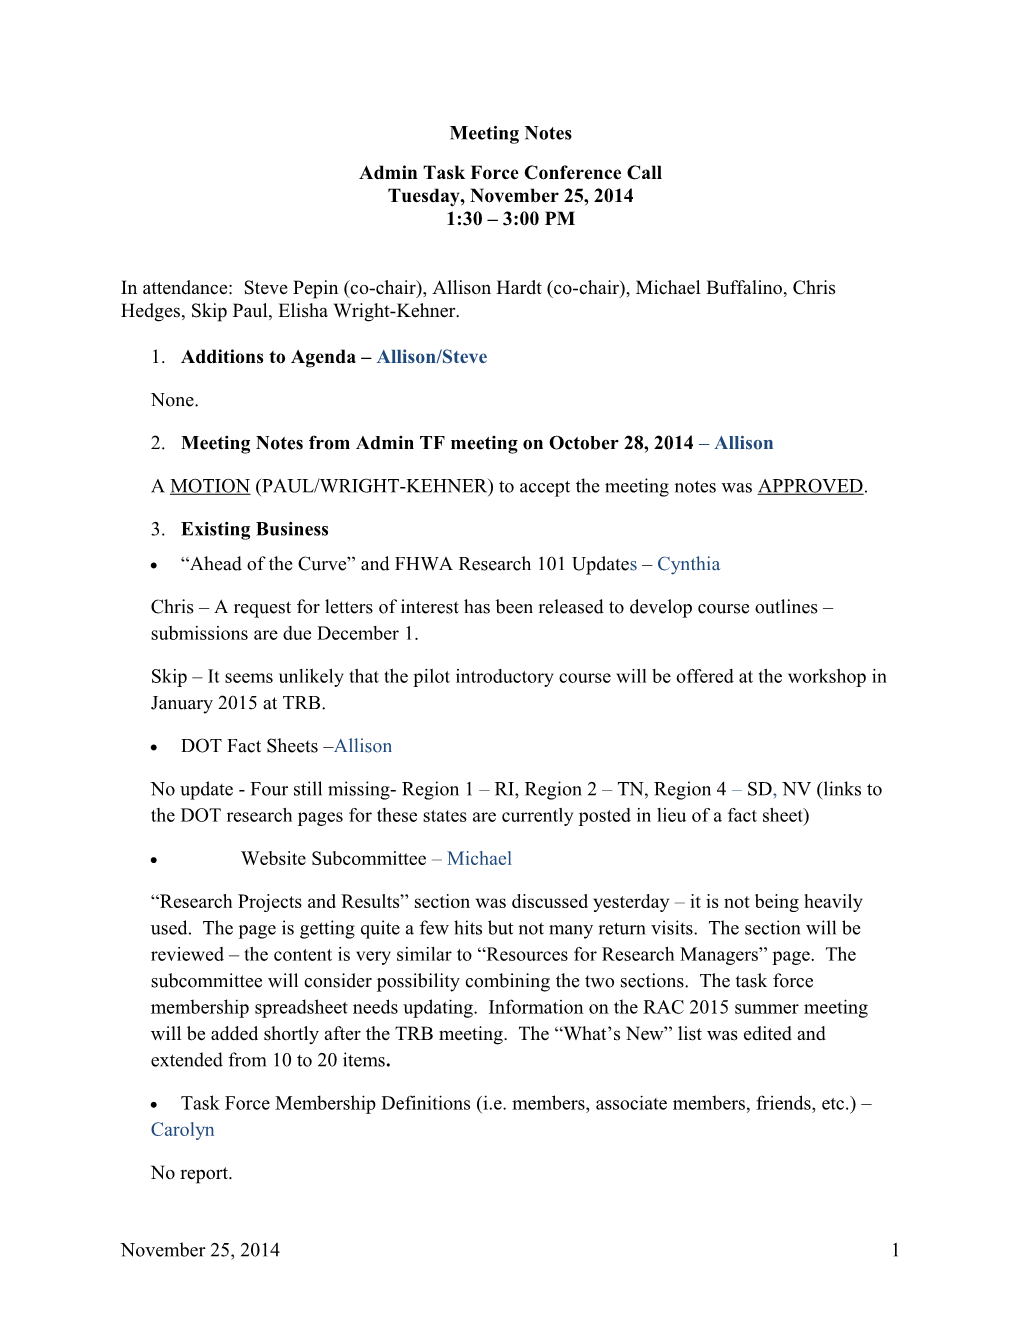 Admin TF Meeting Notes: November 25, 2014